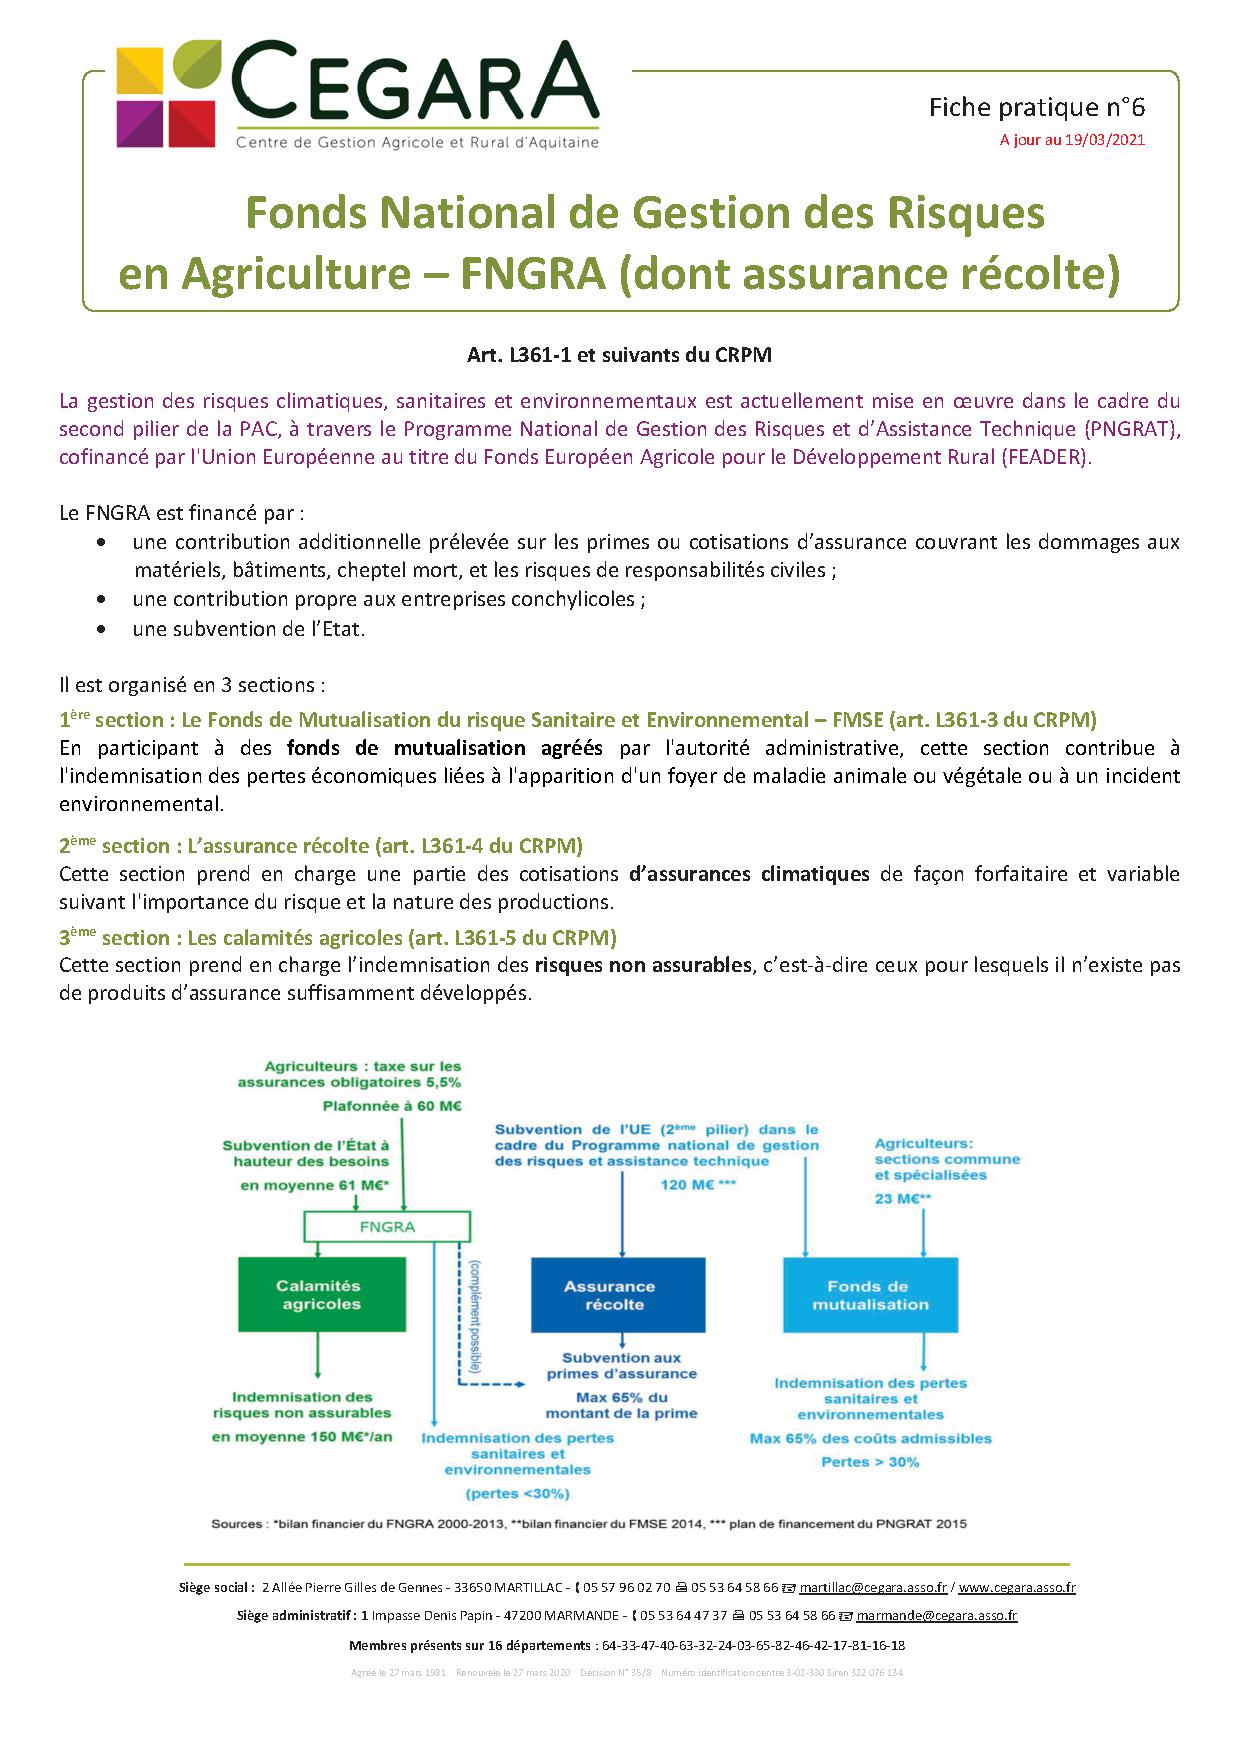 Fiche n°6 : Fonds National de Gestion des Risques en Agriculture - FNGRA (dont assurance récolte)